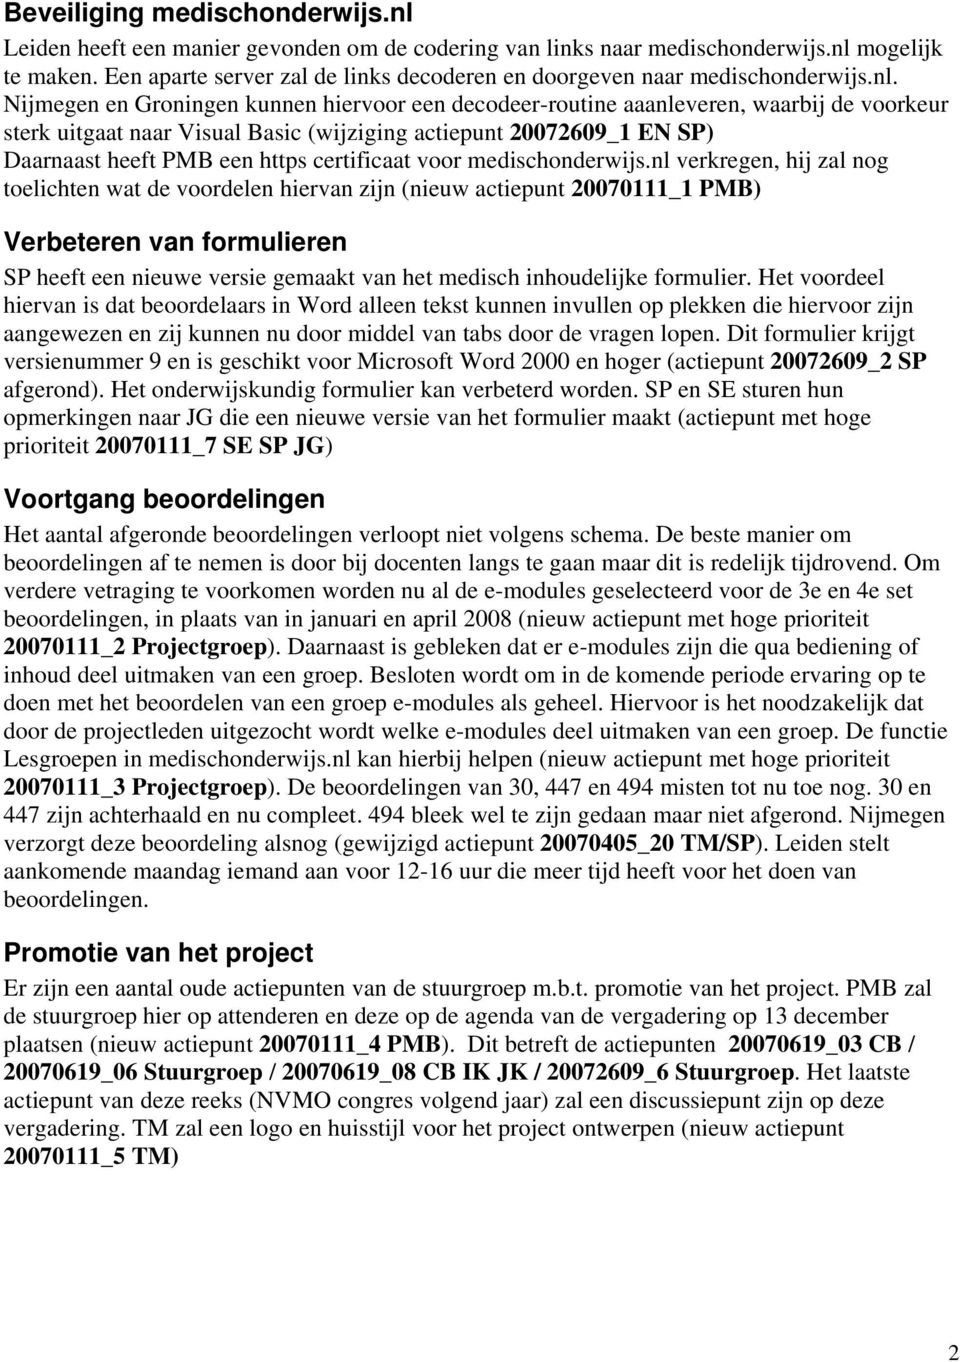 Nijmegen en Groningen kunnen hiervoor een decodeer-routine aaanleveren, waarbij de voorkeur sterk uitgaat naar Visual Basic (wijziging actiepunt 20072609_1 EN SP) Daarnaast heeft PMB een https